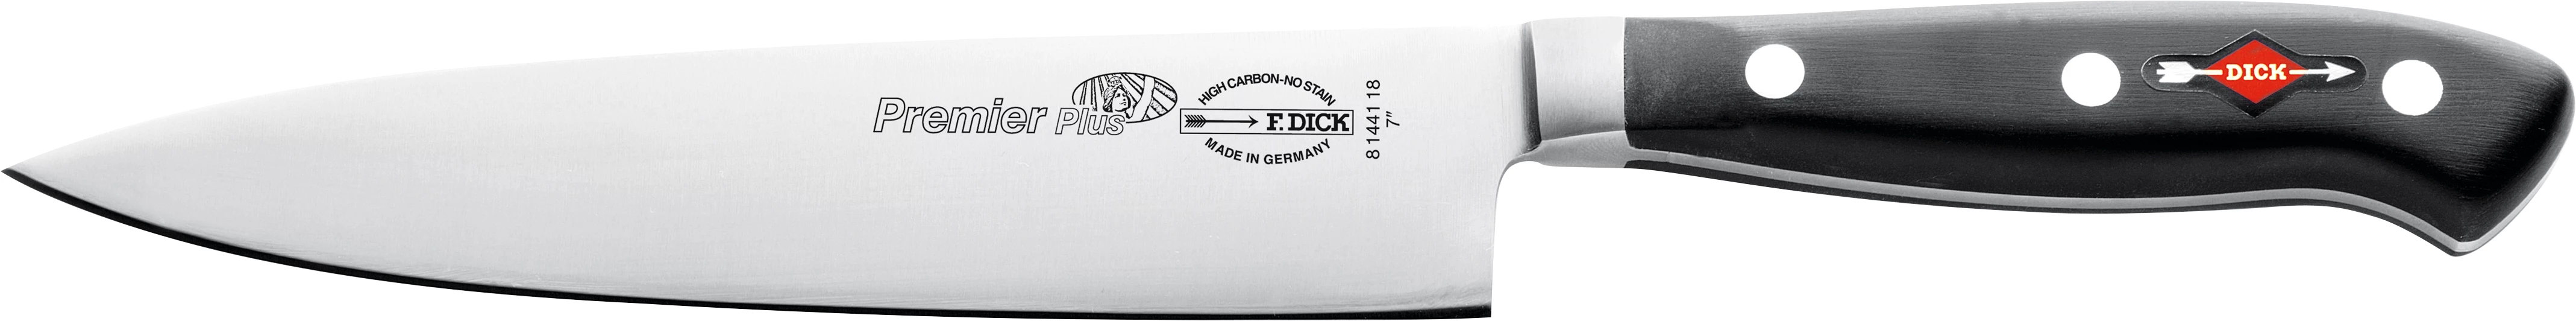 Dick kokkekniv, japansk model, 18 cm